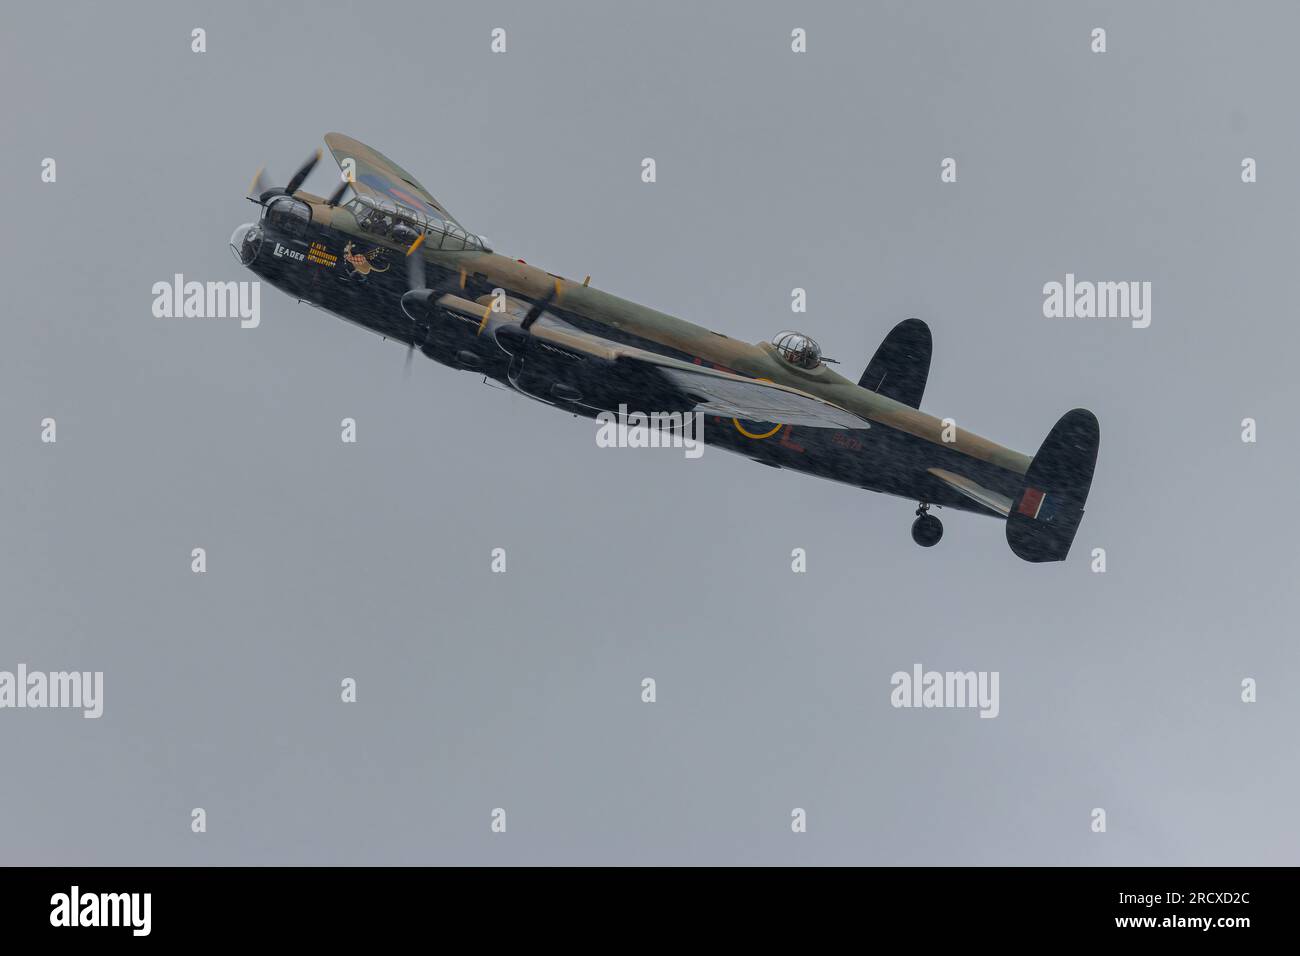 L'Avro Lancaster Bomber RAF FAIRFORD, ANGLETERRE DANS des images DE COURSE DE COEUR capturées hier dimanche 16 juillet montrent des avions de la Seconde Guerre mondiale et des fighte britanniques plus modernes Banque D'Images